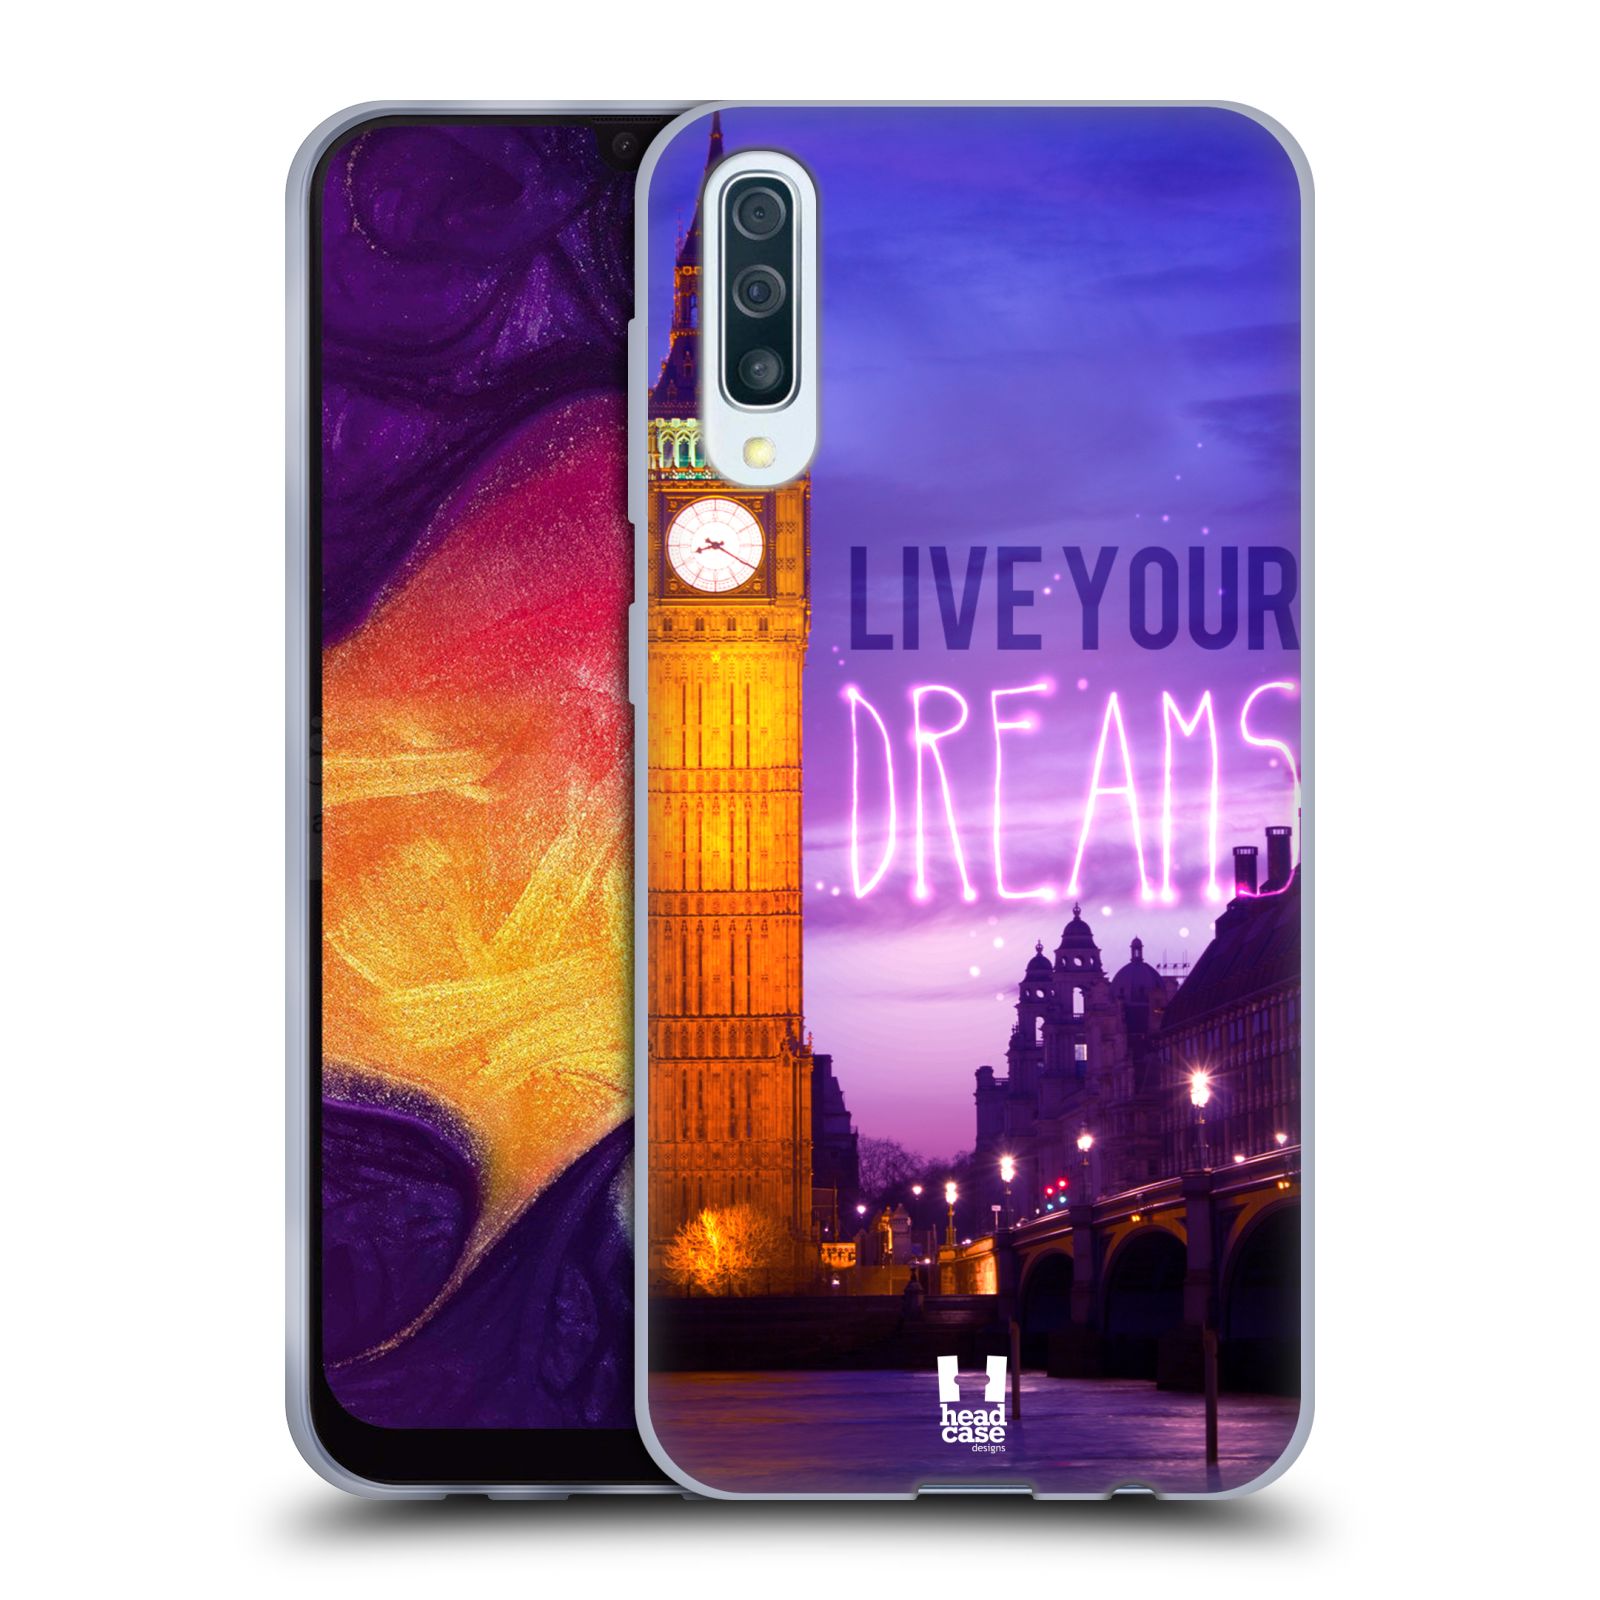 Silikonové pouzdro na mobil Samsung Galaxy A50 / A30s - Head Case - DREAMS (Silikonový kryt, obal, pouzdro na mobilní telefon Samsung Galaxy A50 / A30s z roku 2019 s motivem DREAMS)